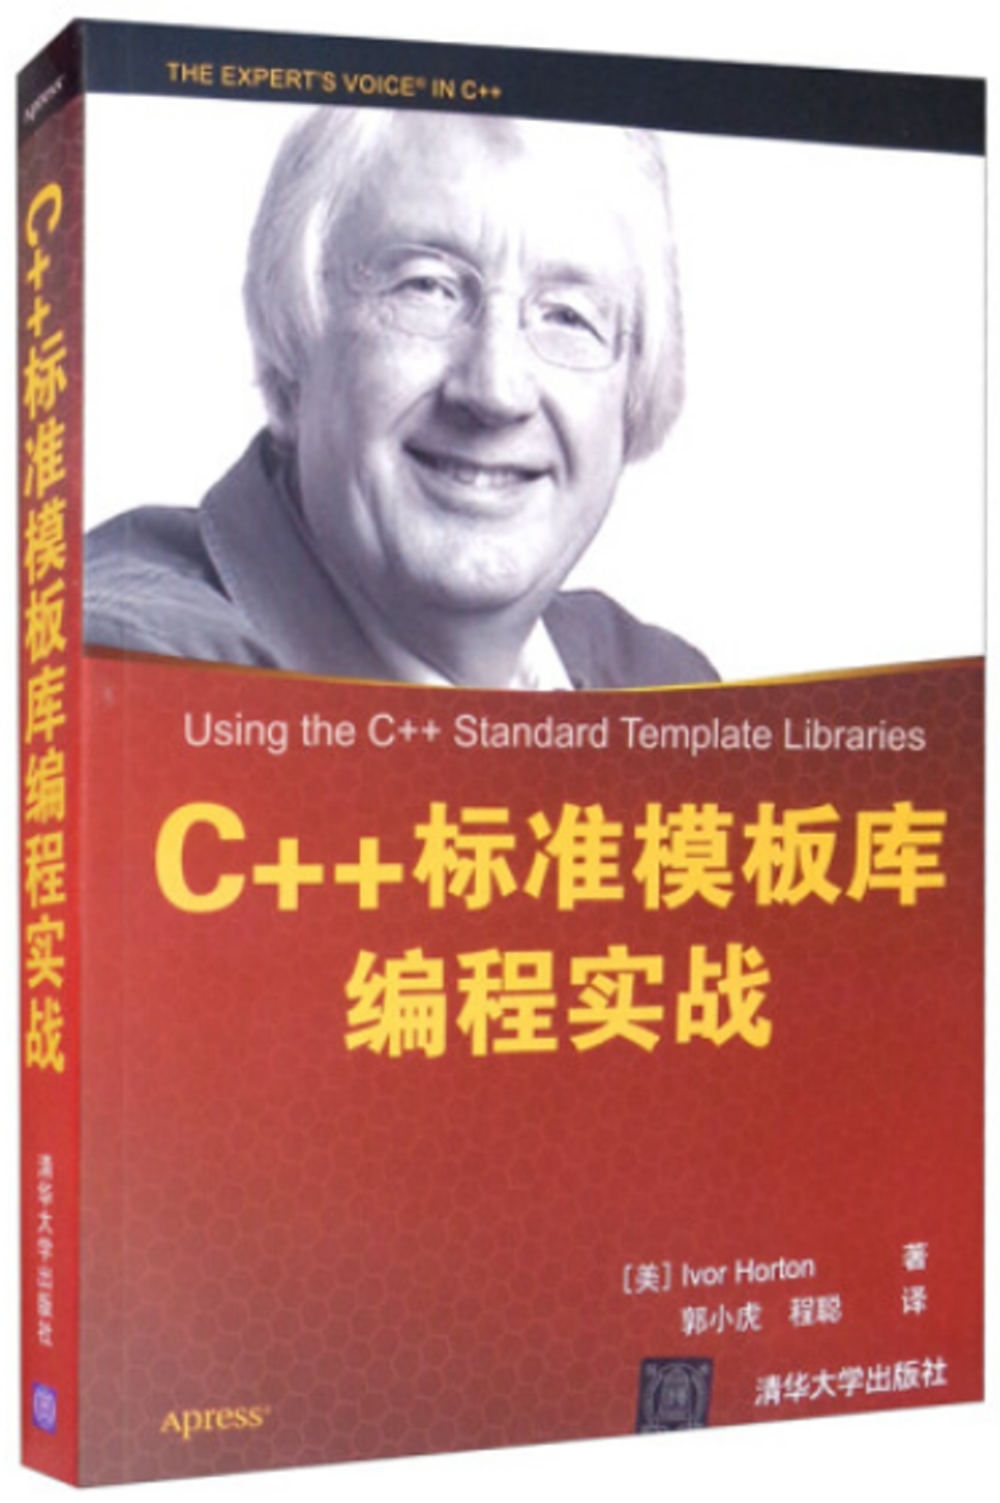 C++標準範本庫編程實戰